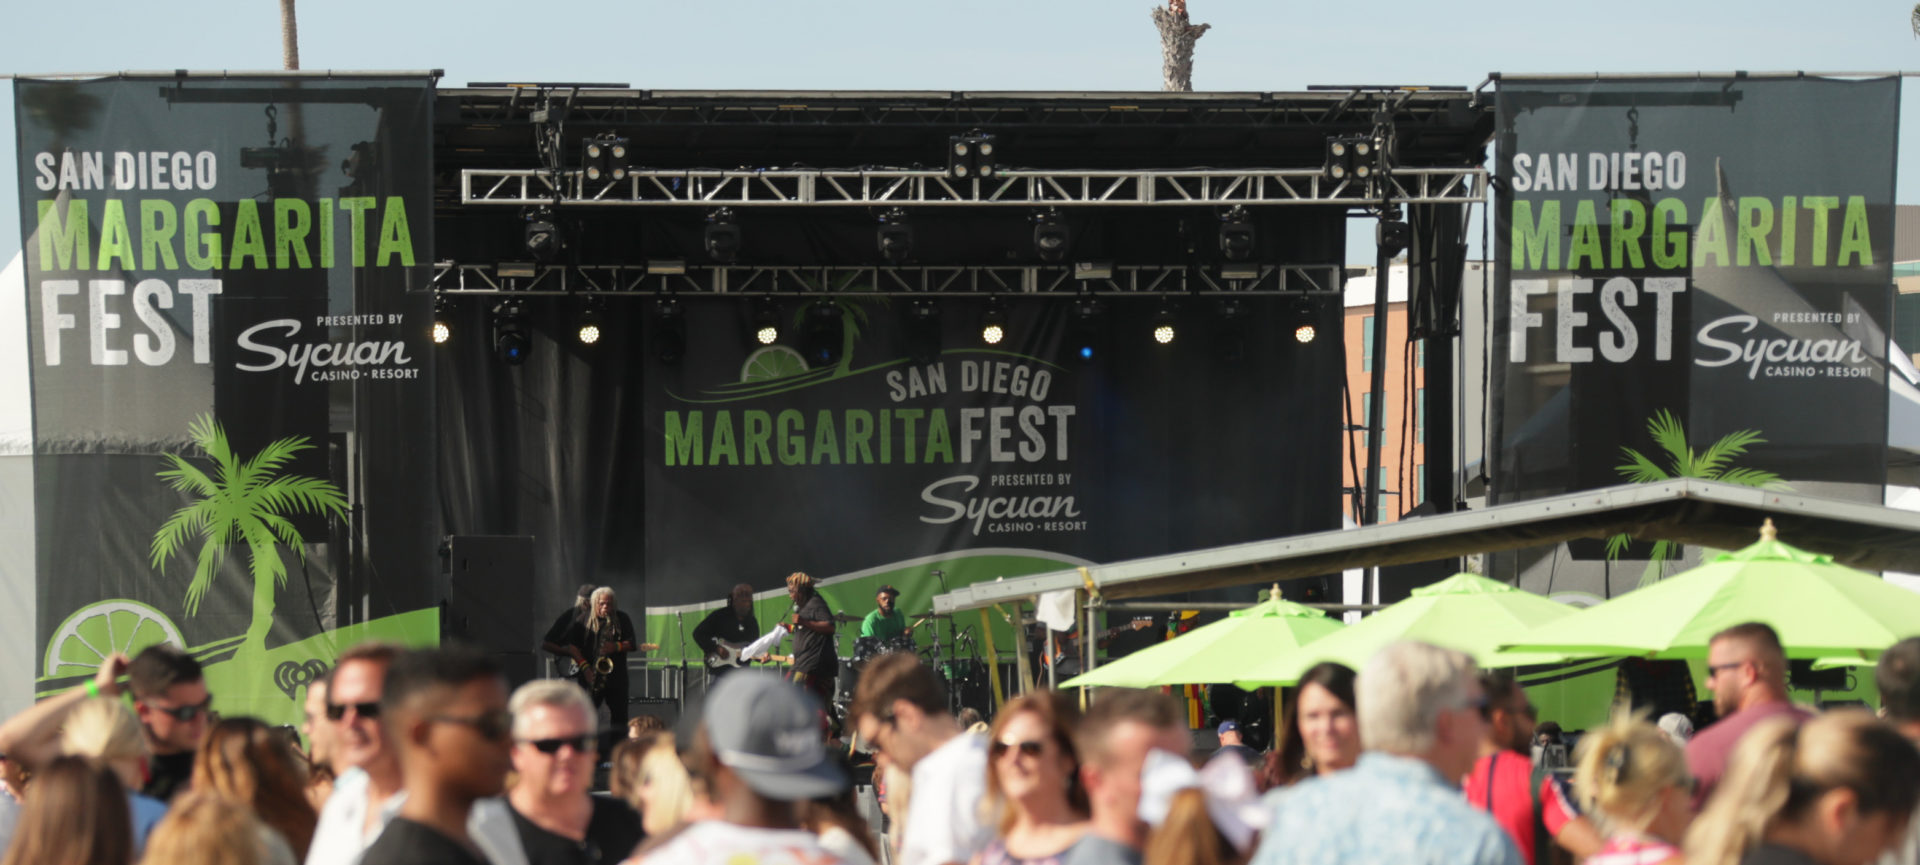 San Diego Margarita Fest